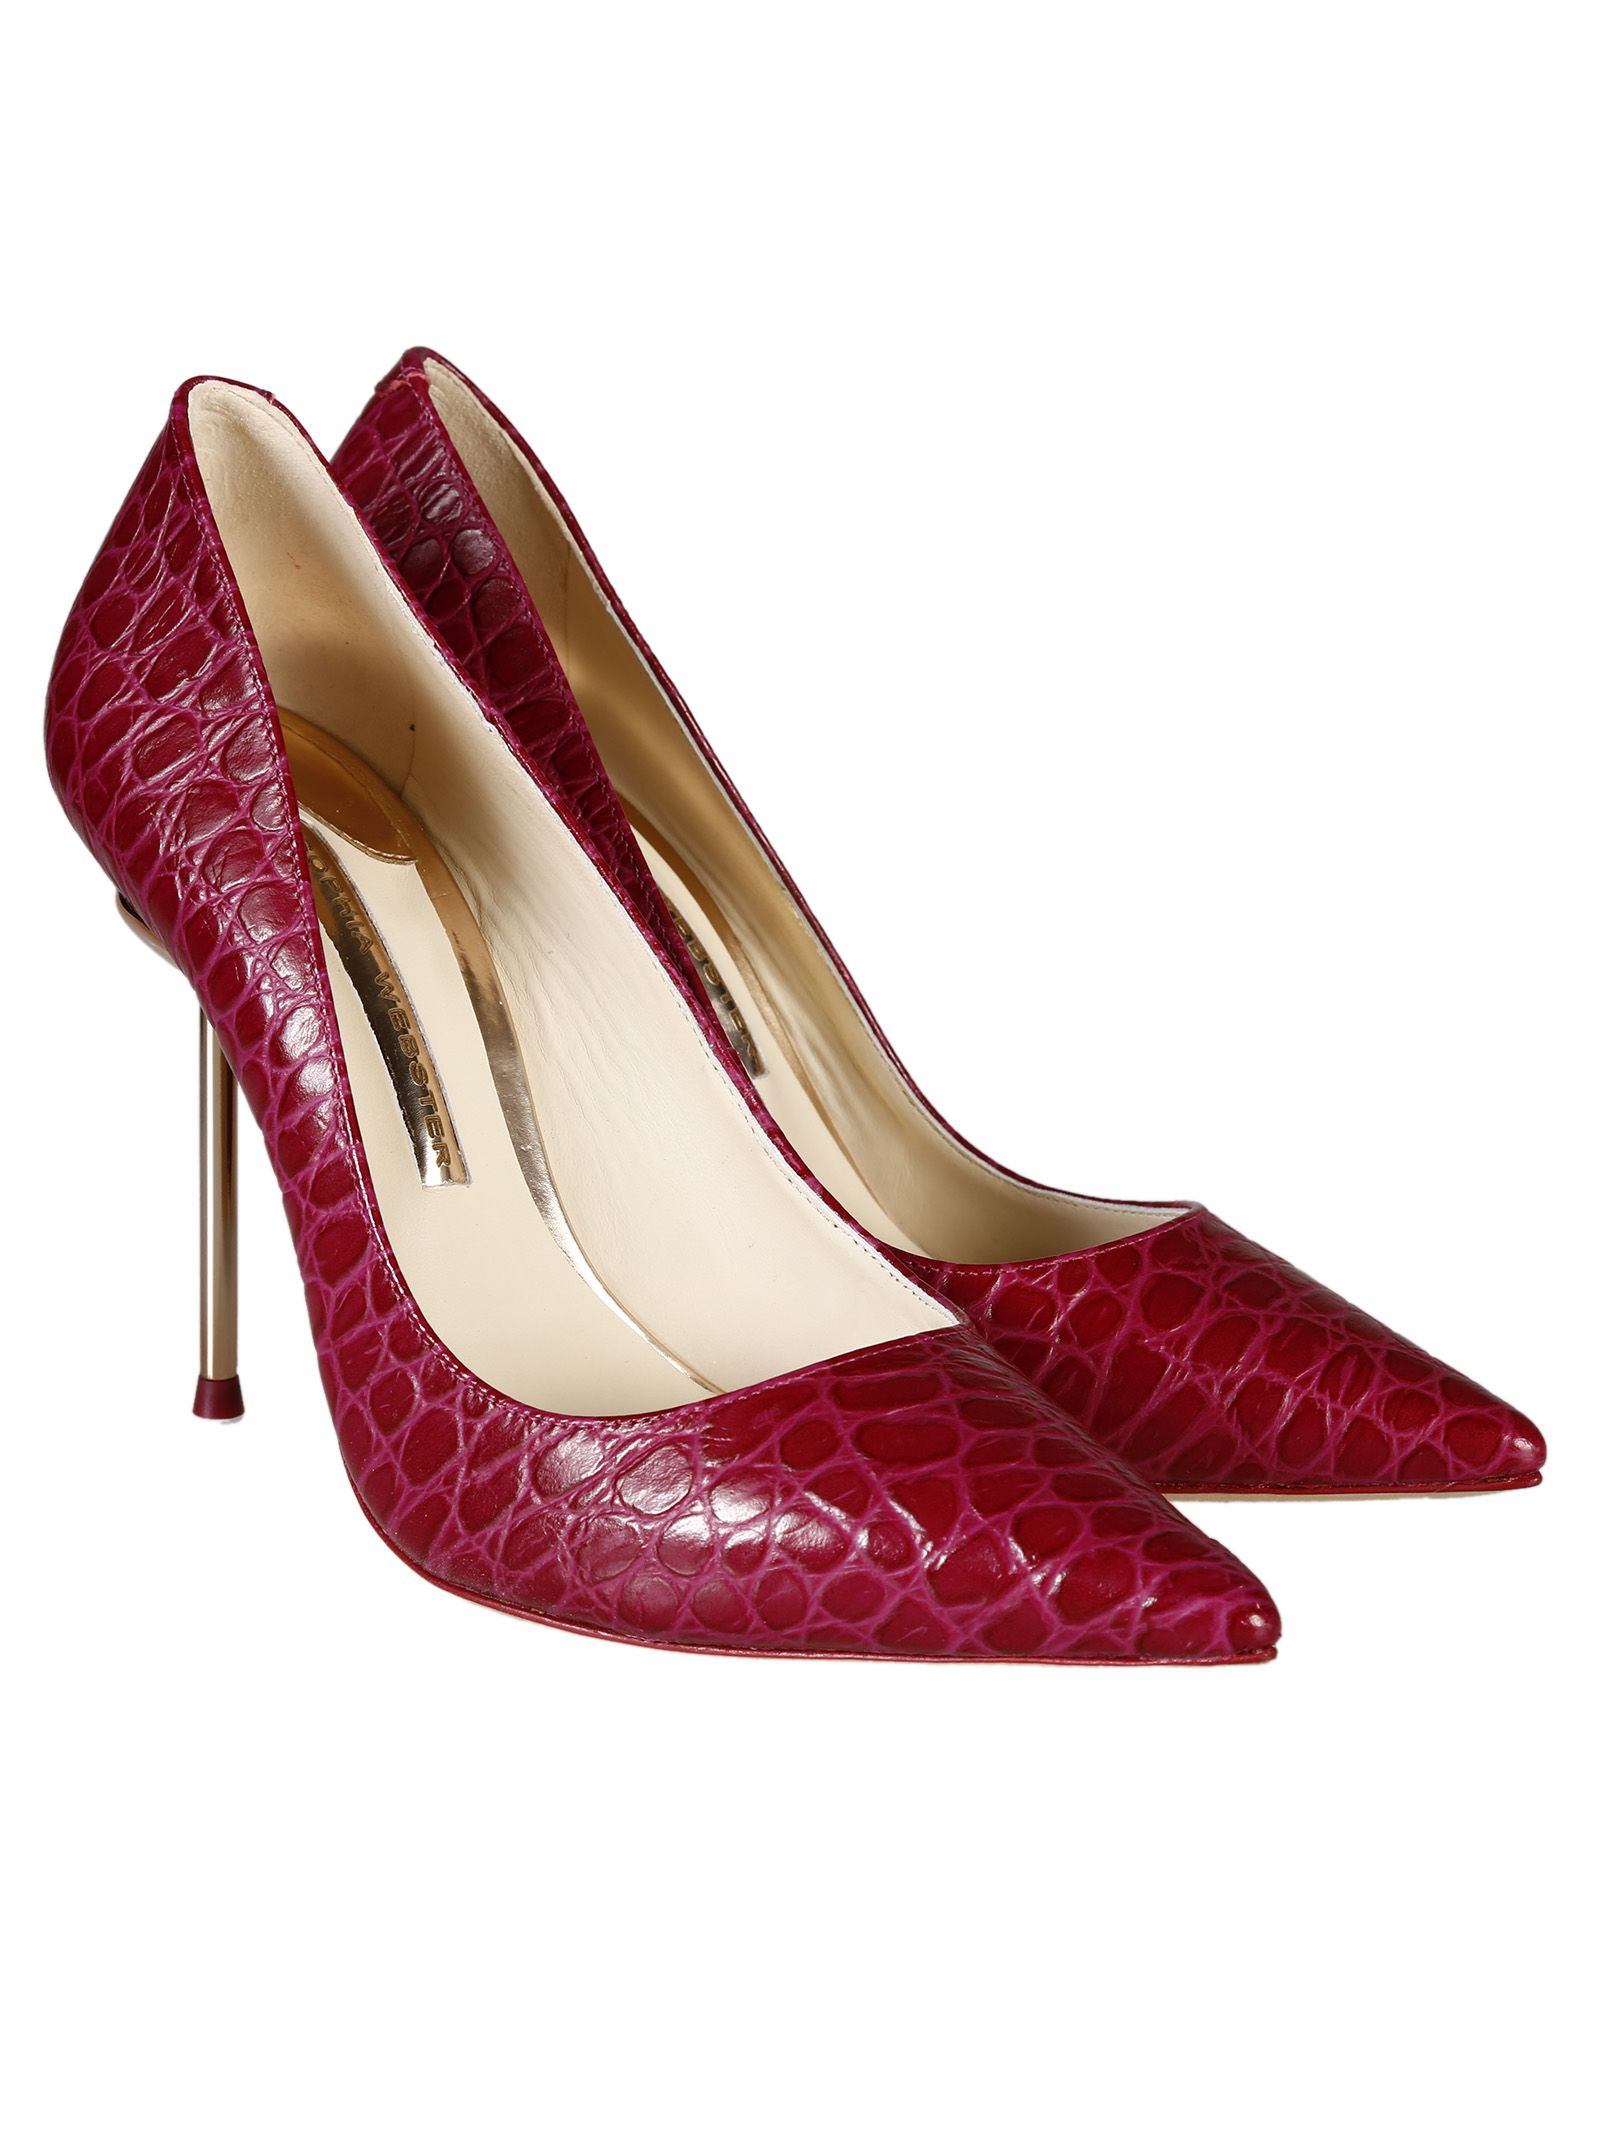 sophia webster red shoes